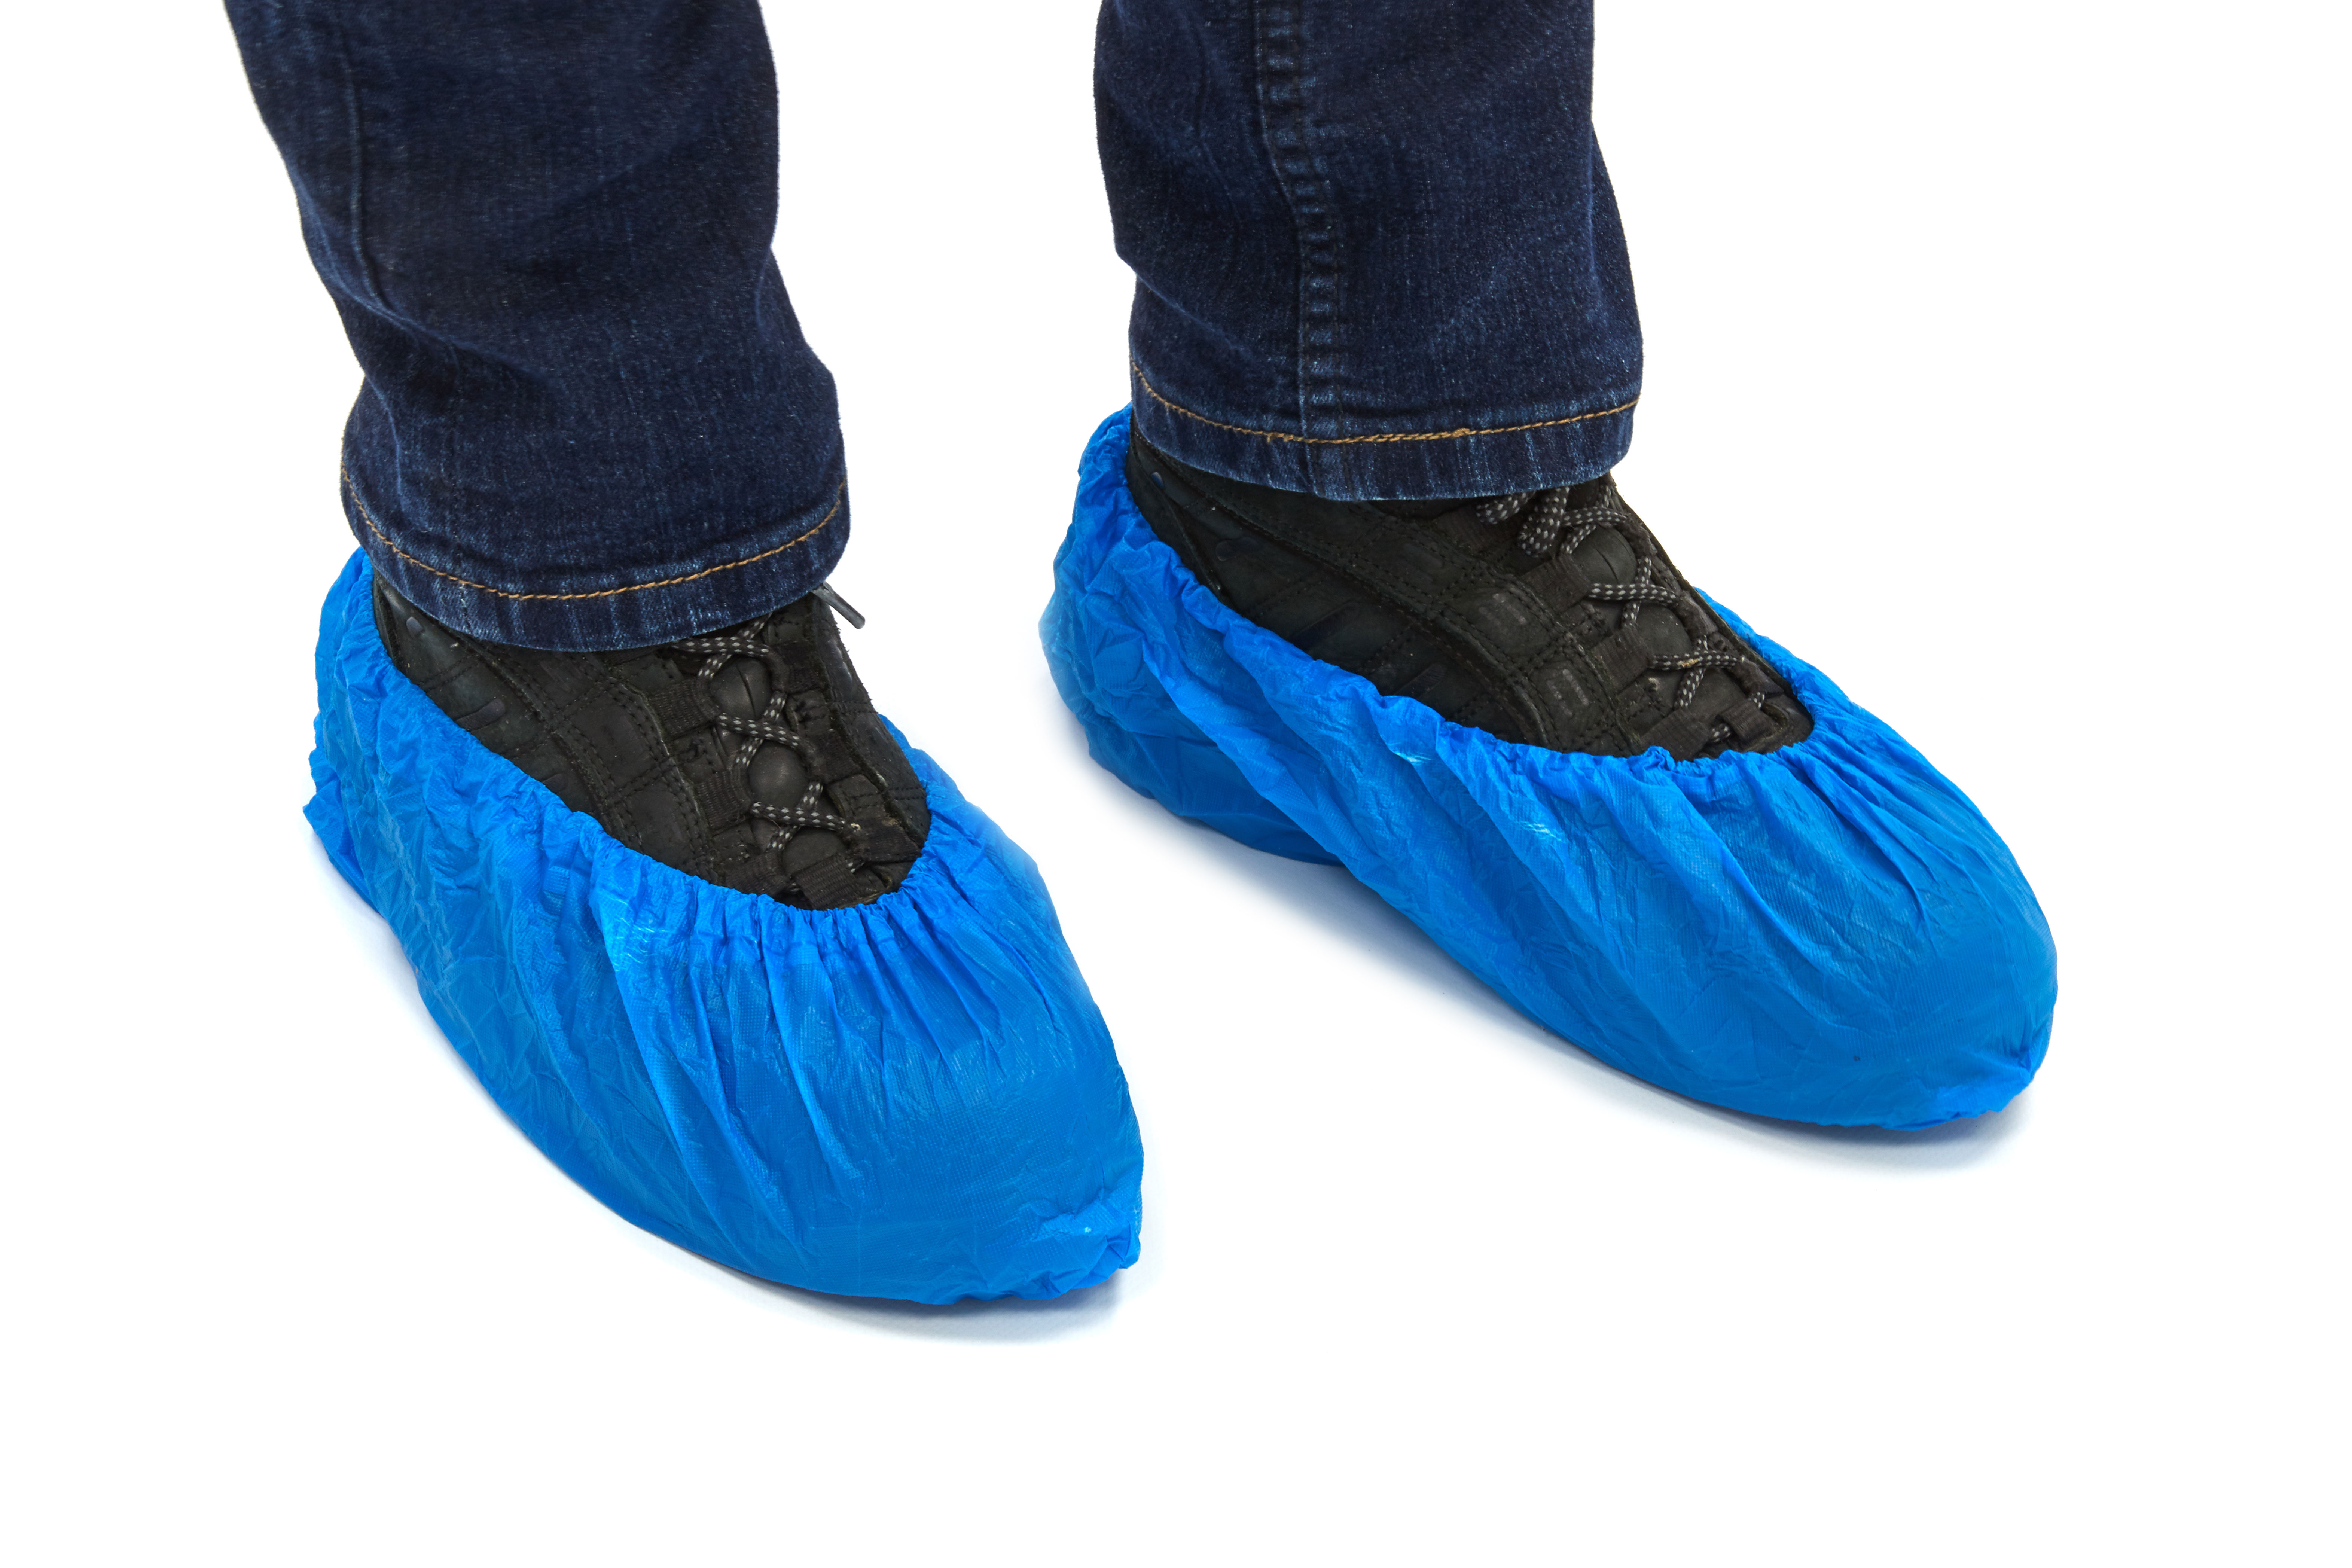 SC-2000 Romed CPE shoe covers, blue, 150x360mm, per 10 pcs in a bundle, 10 x10 pcs = 100 pcs in a polybag, 20 x 100 pcs = 2.000 pcs in a carton.